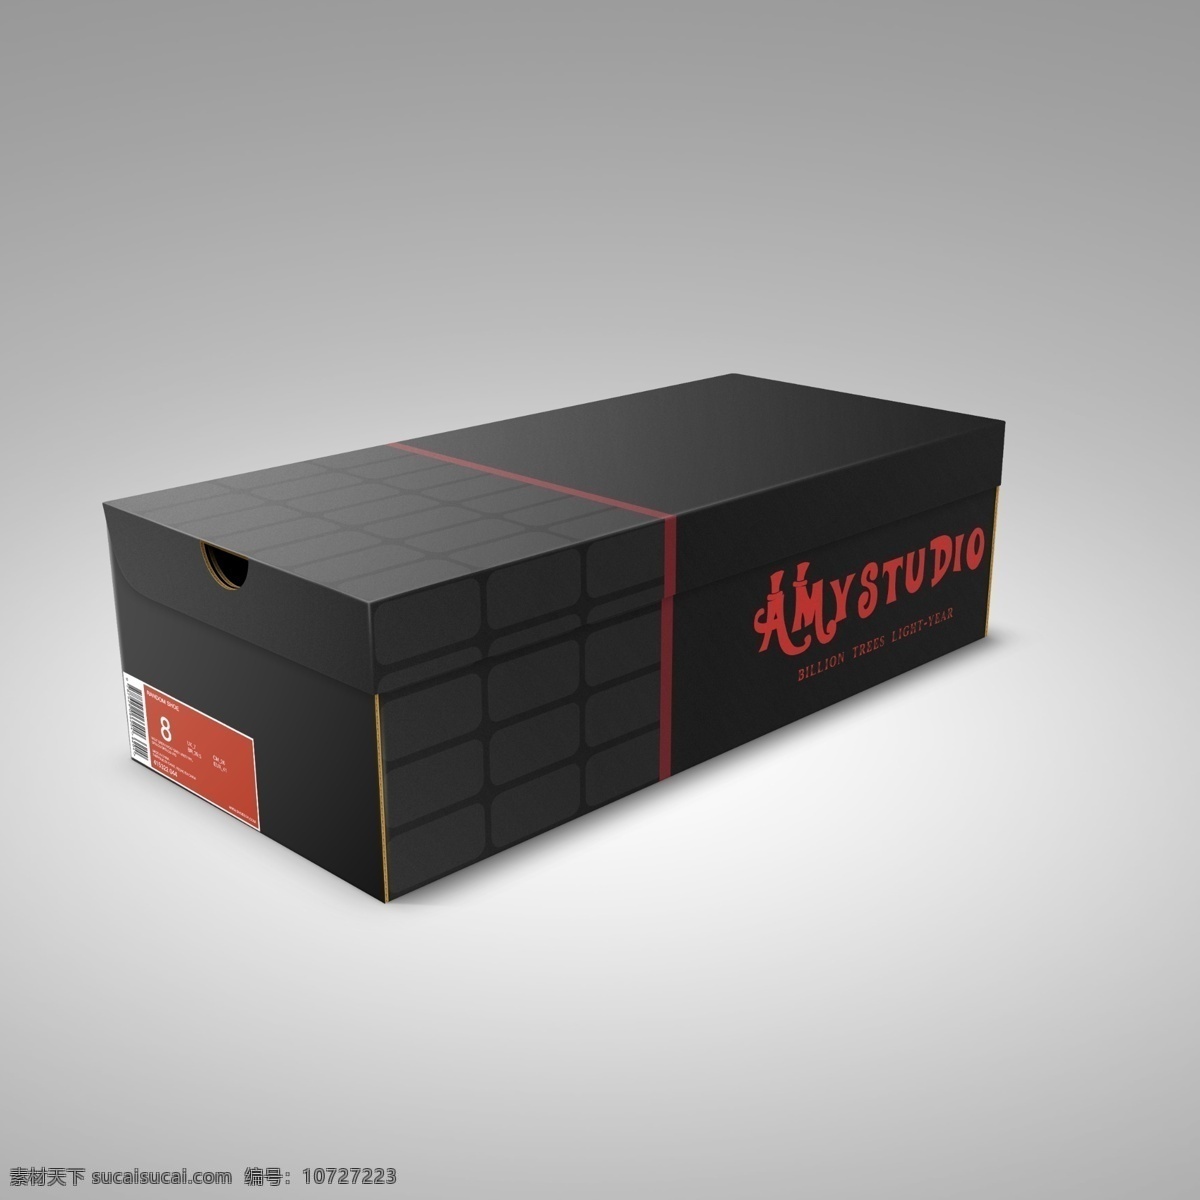 纸盒包装 包装贴图设计 vi包装设计 盒子vi样机 盒子设计 包装盒设计 包装设计